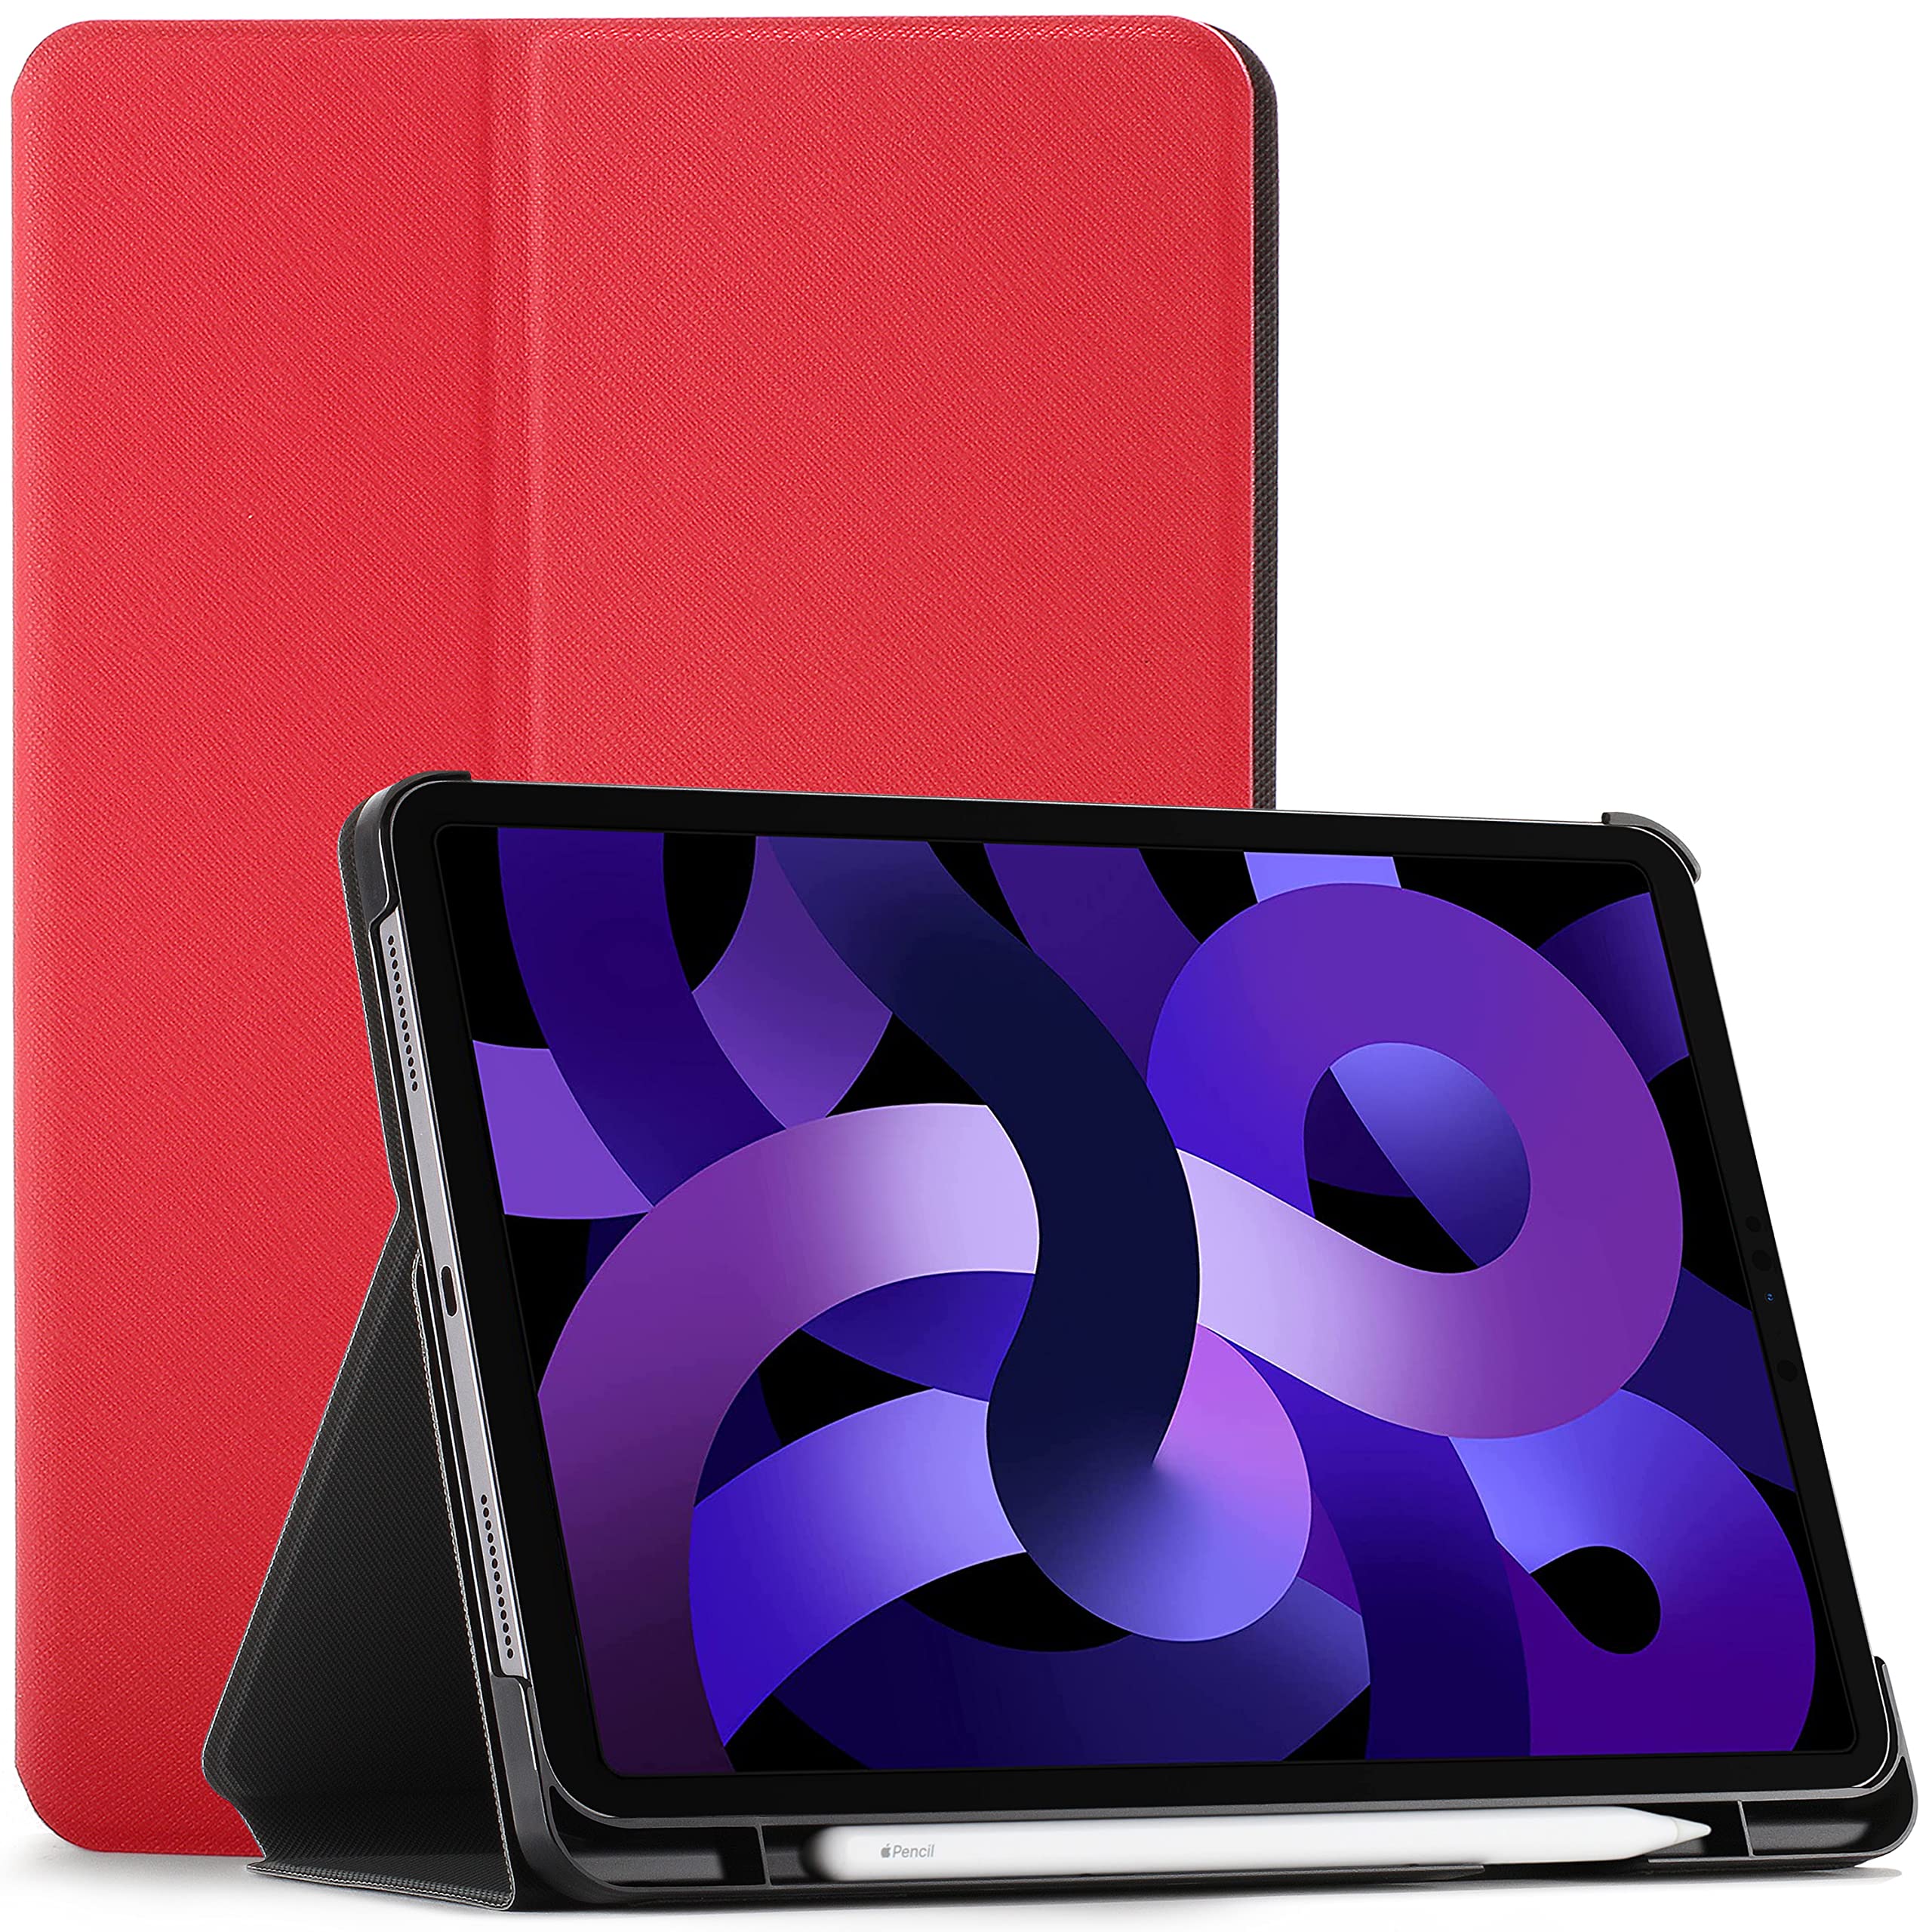 FC Hülle für iPad Pro 11 2020 - Schutz Apple iPad Pro 11 Hülle Ständer mit Pencilhalter - Rot - Dünn, Smart Auto Schlaf/Wach, iPad Pro 11 Zoll 2020 (2. Generation) Hülle, Tasche